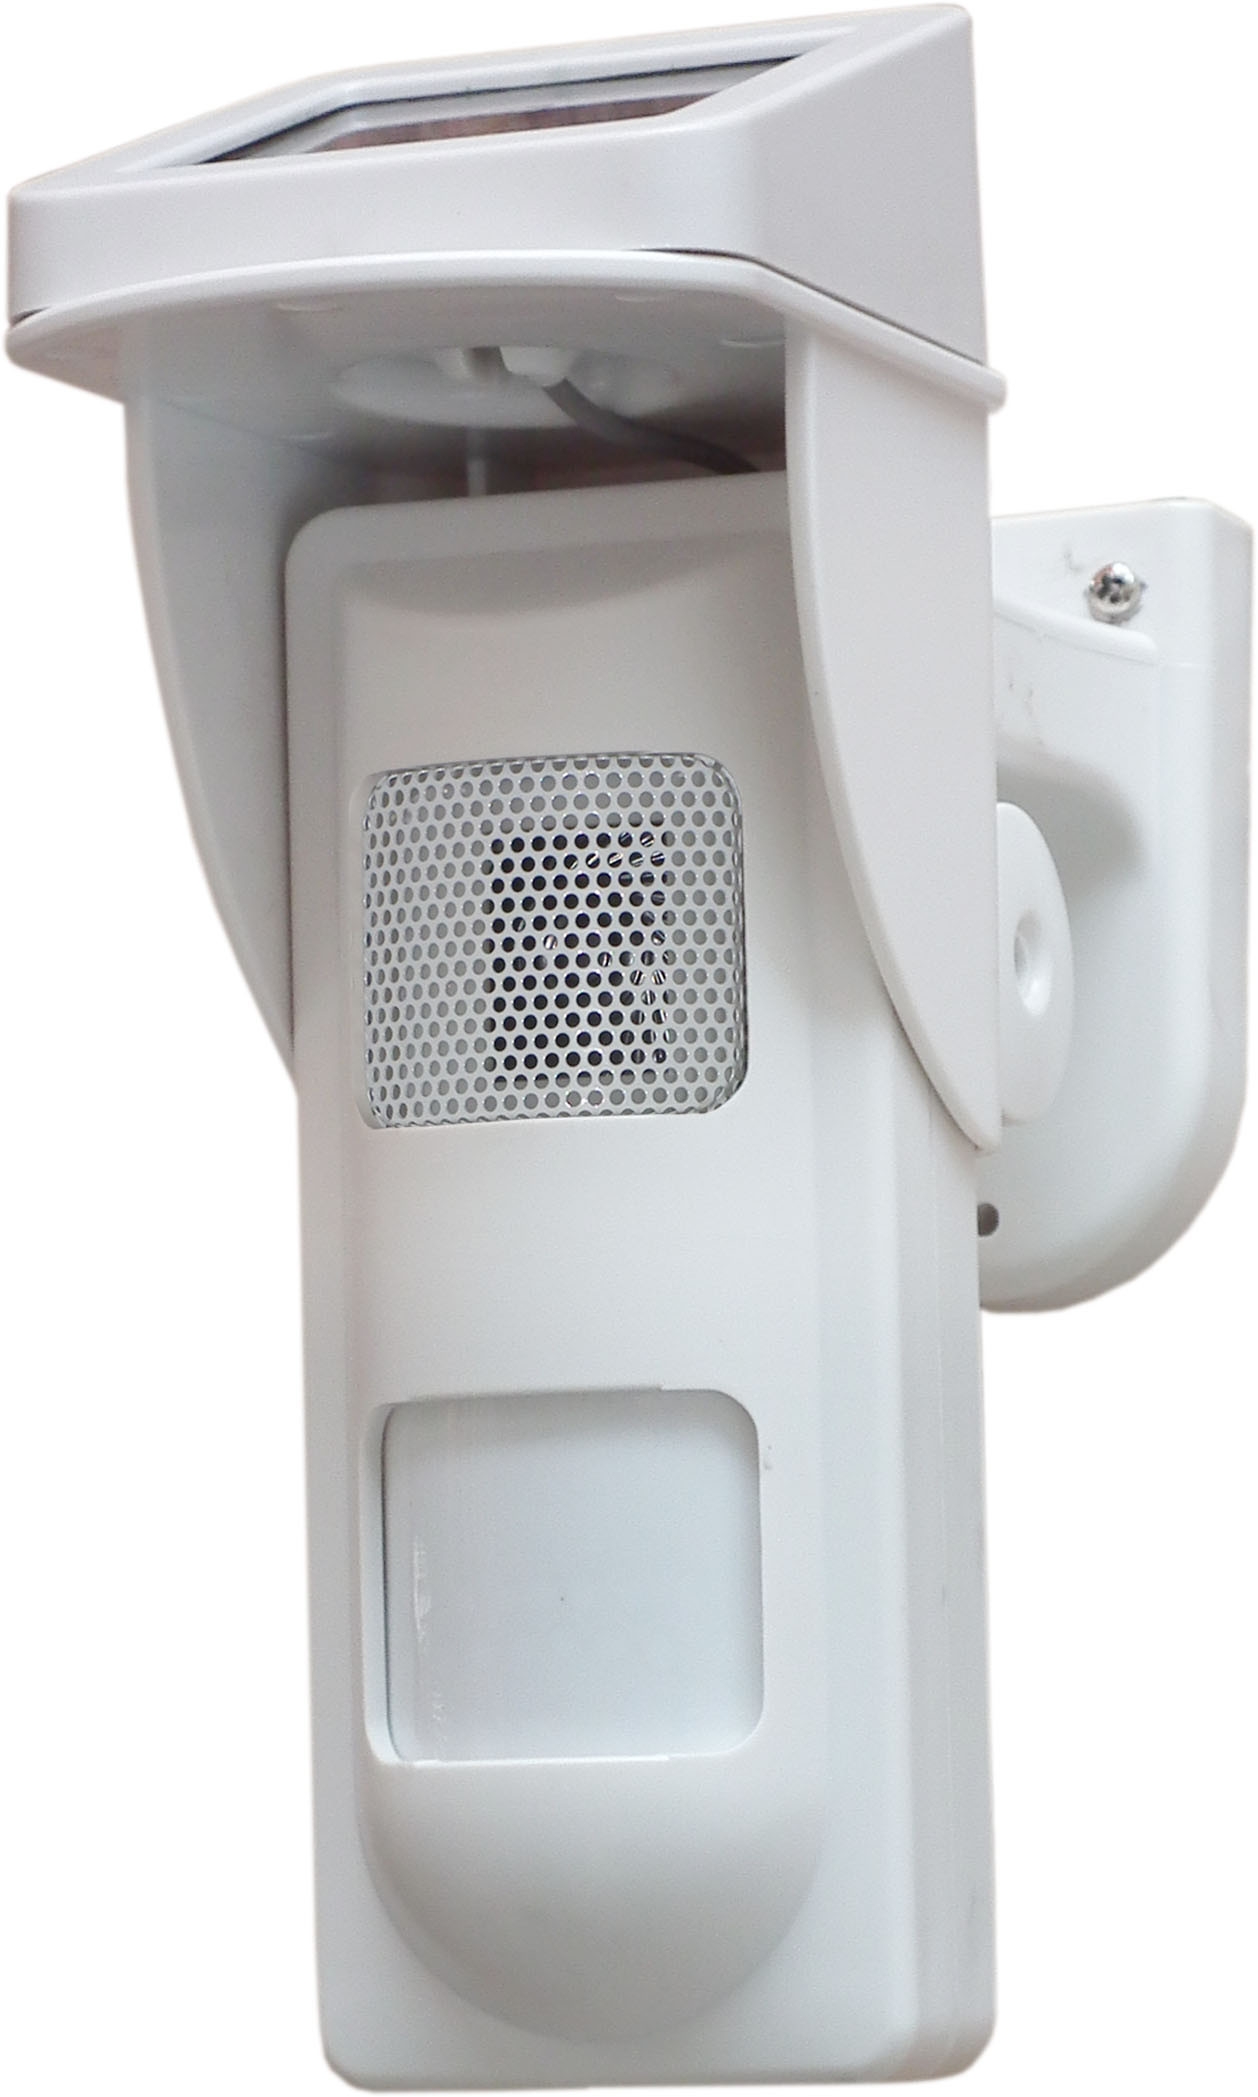 Detector al aire libre solar blanco de la alarma del punto con alarma del sonido y de la luz